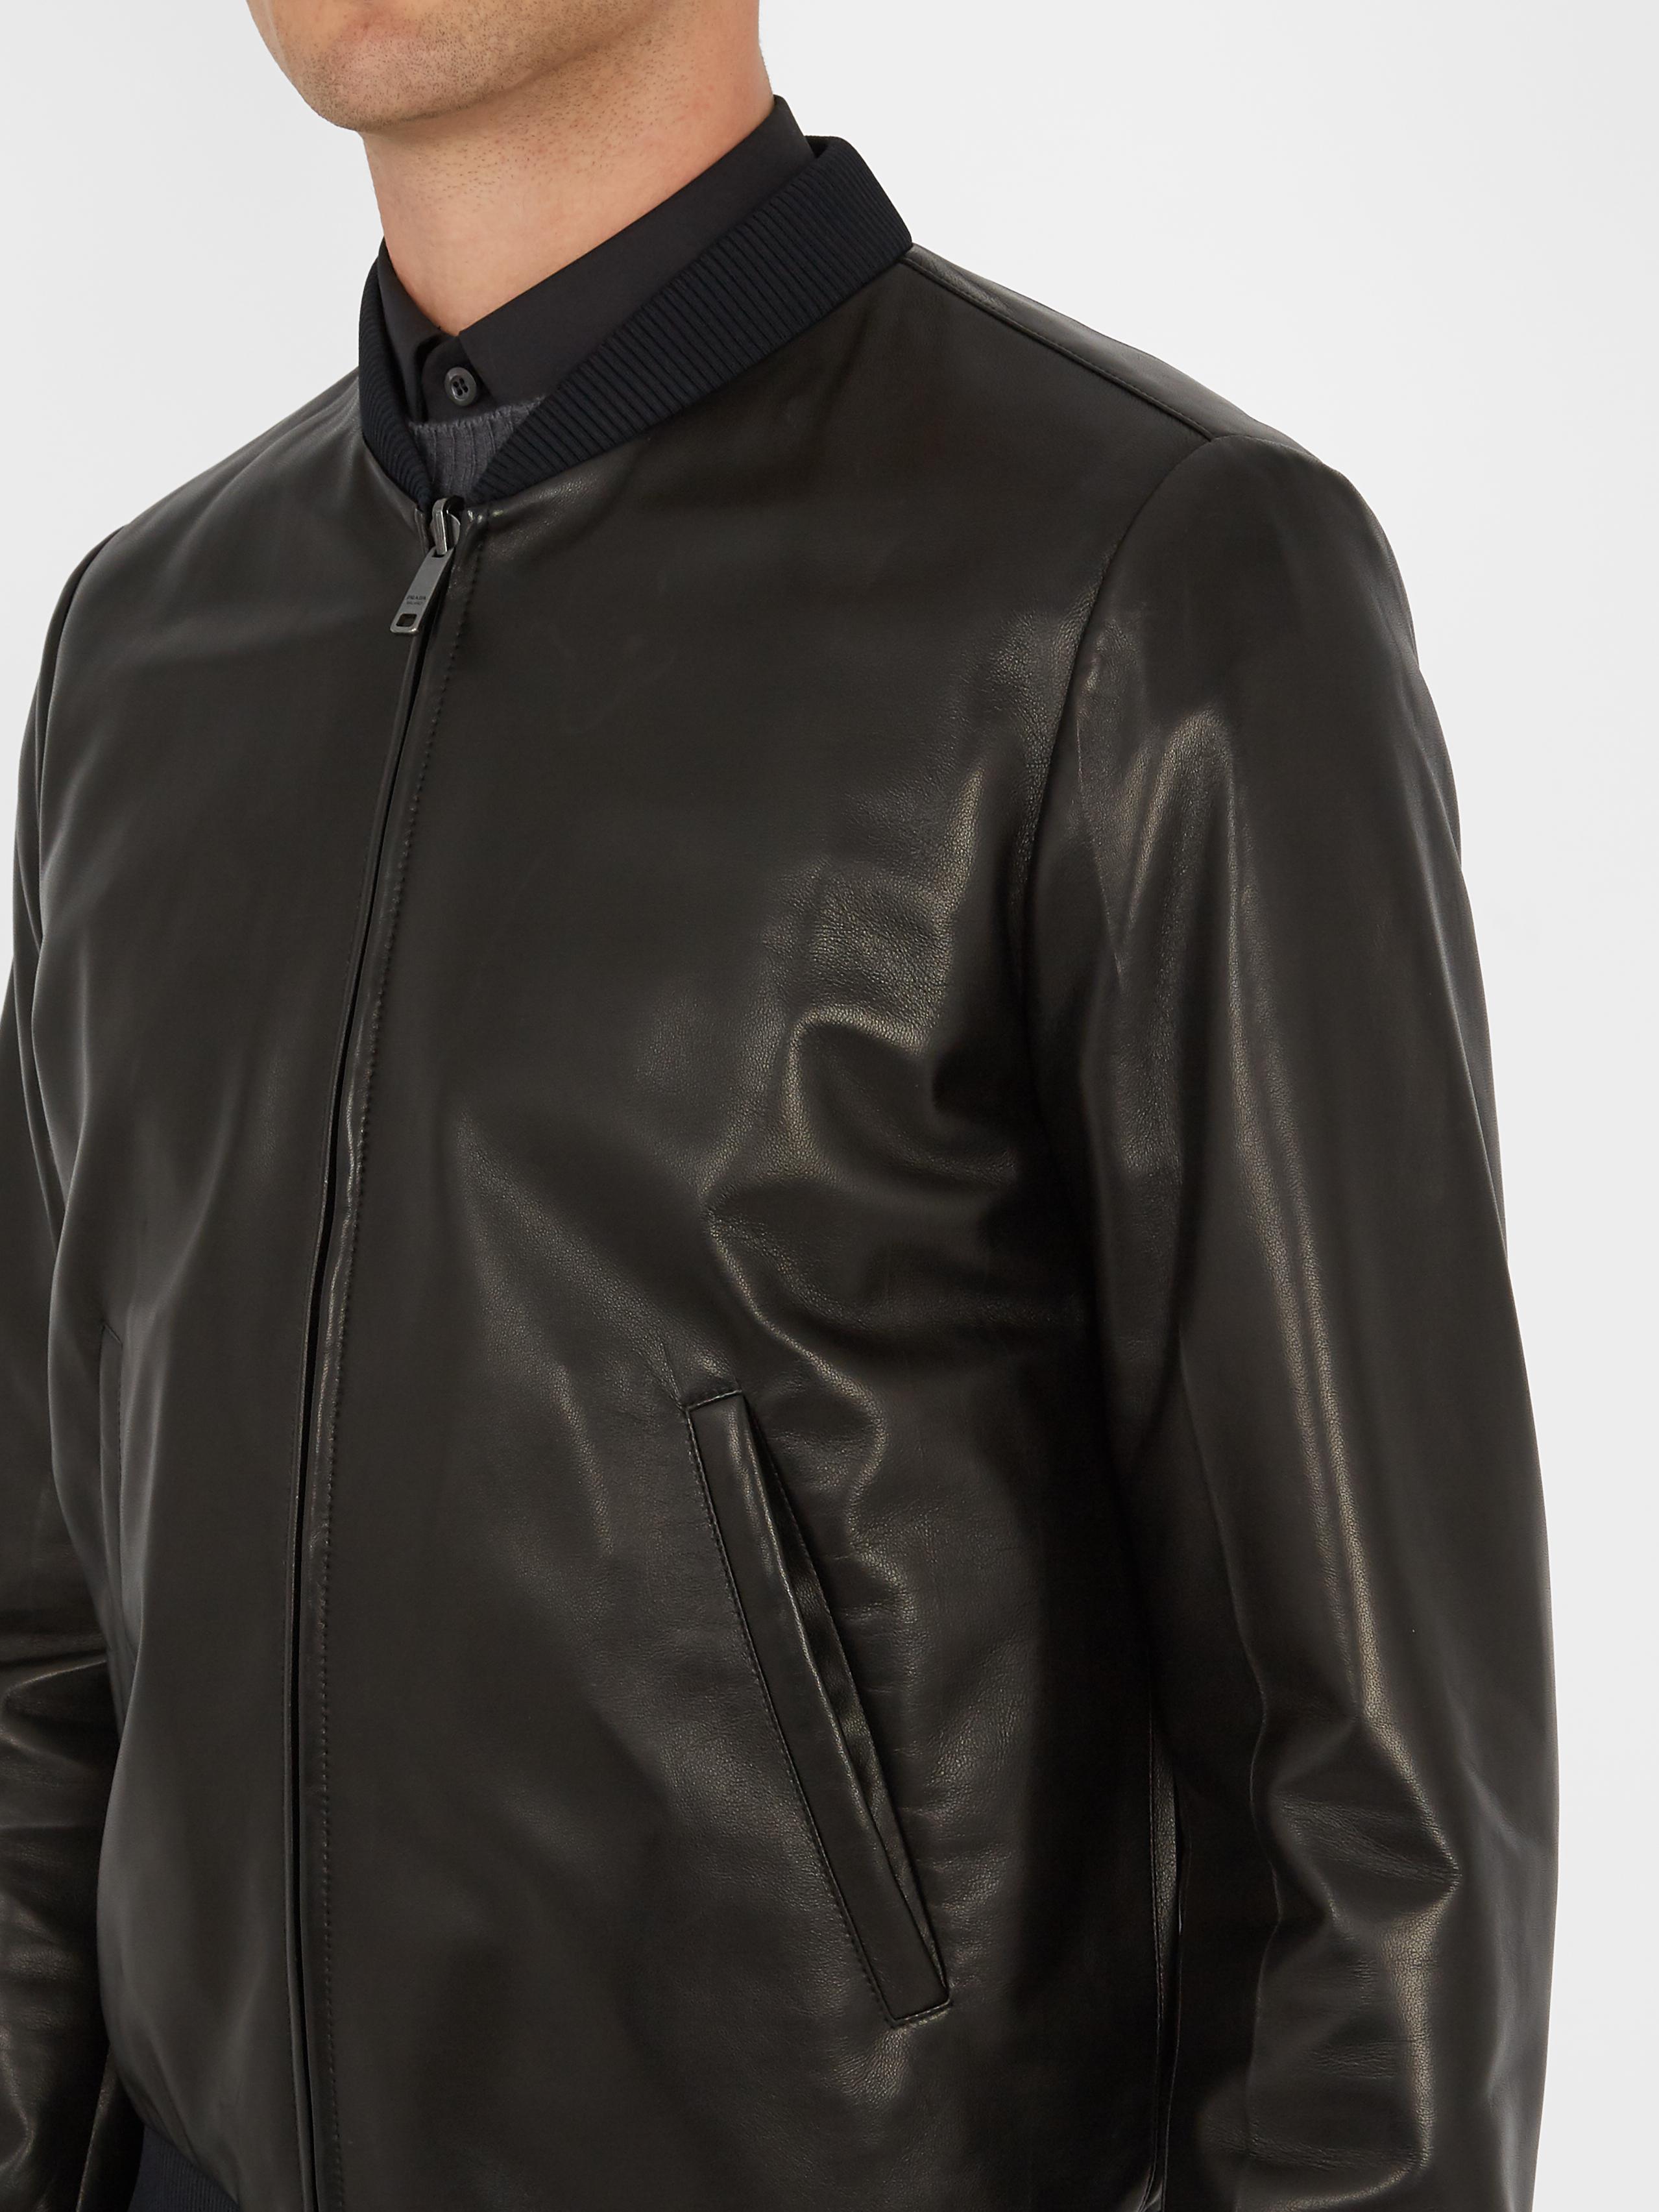 prada leather bomber jacket